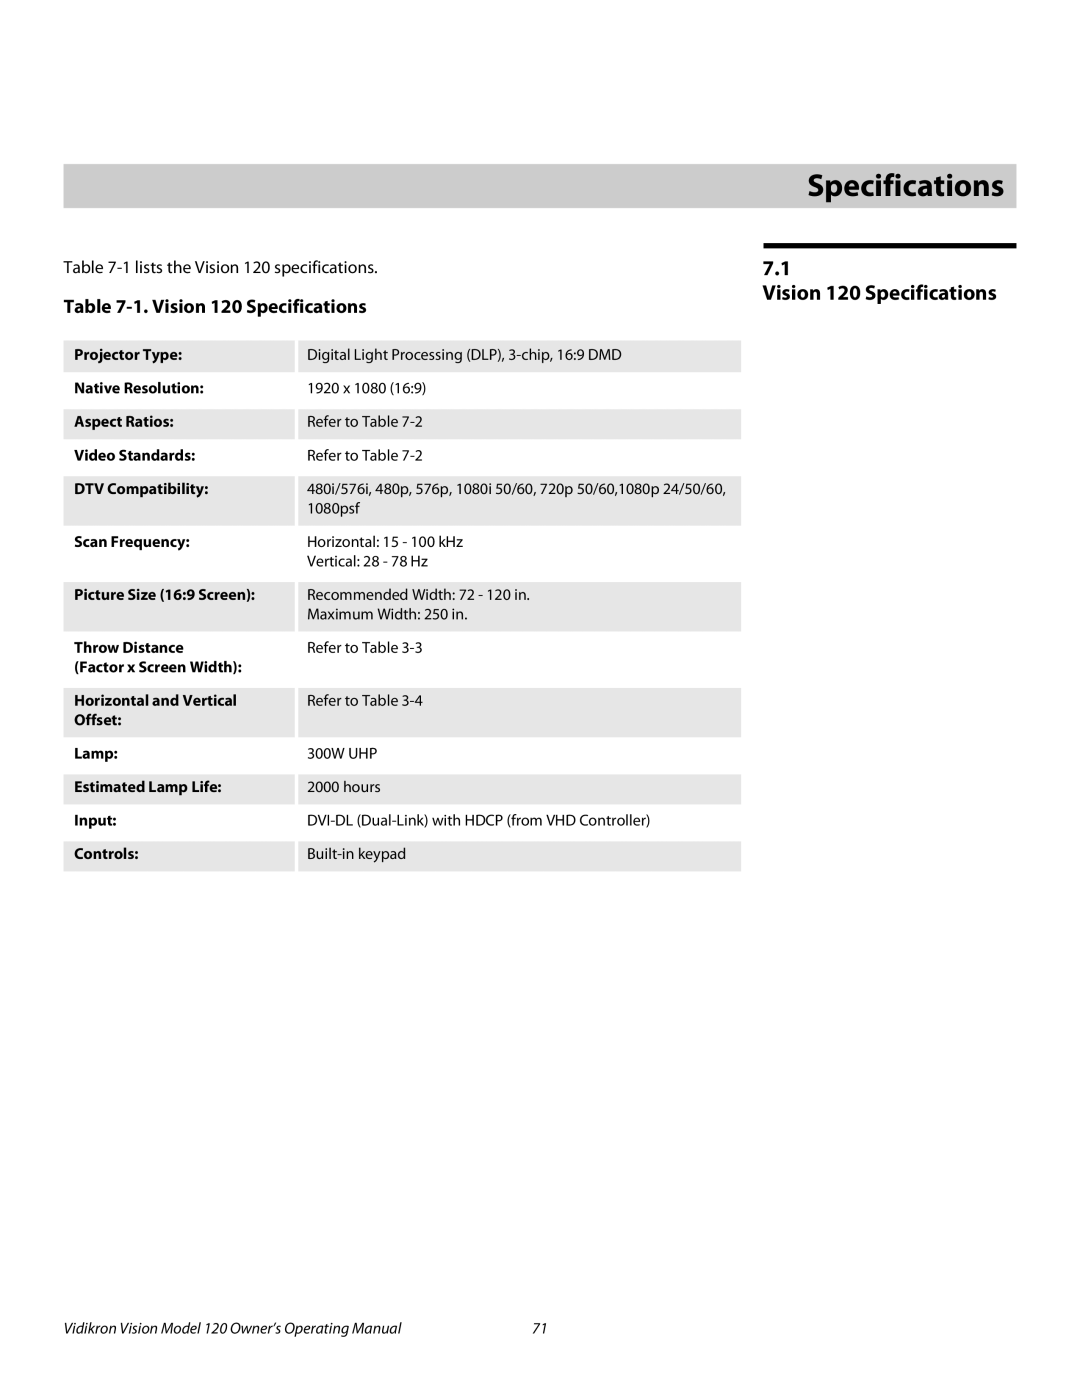 Vidikron v120 manual 7Specifications, Vision 120 Specifications 